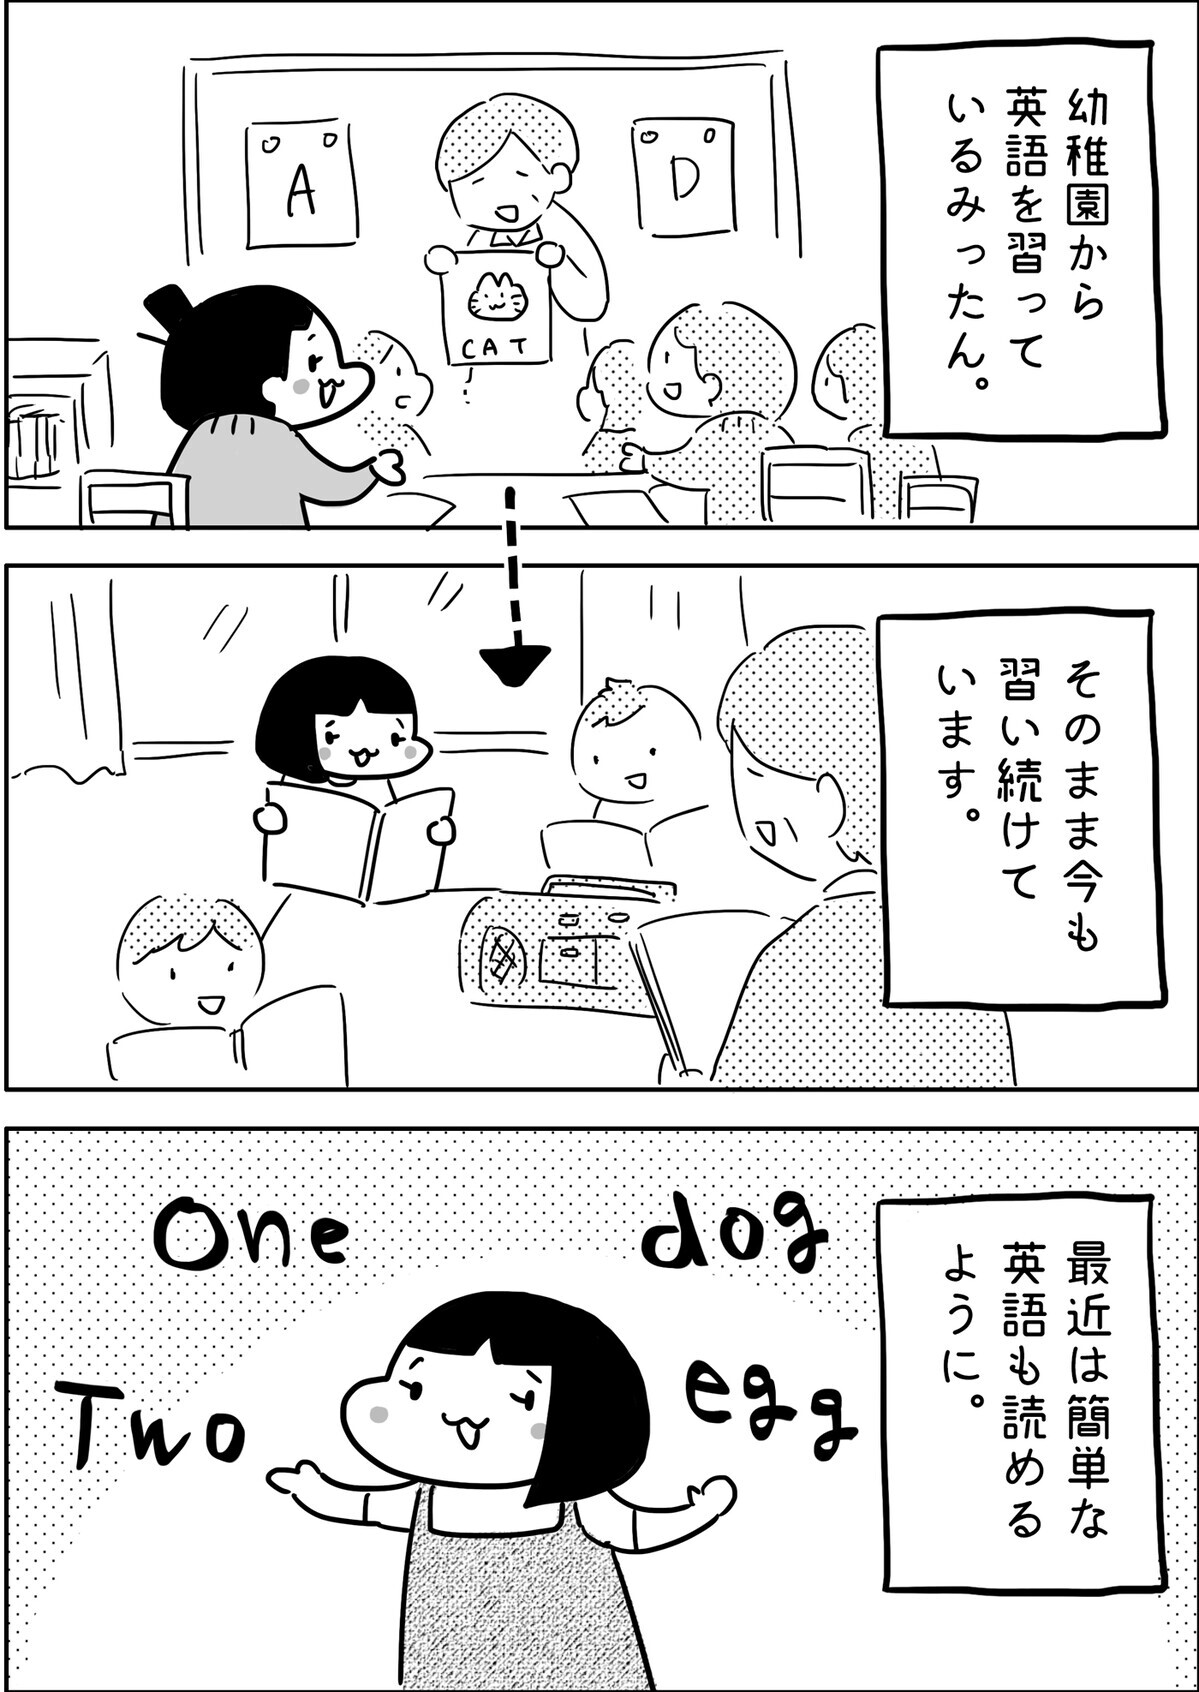 幼稚園から英語を習っているみったん。最近は簡単な英語も読めるようになりました。